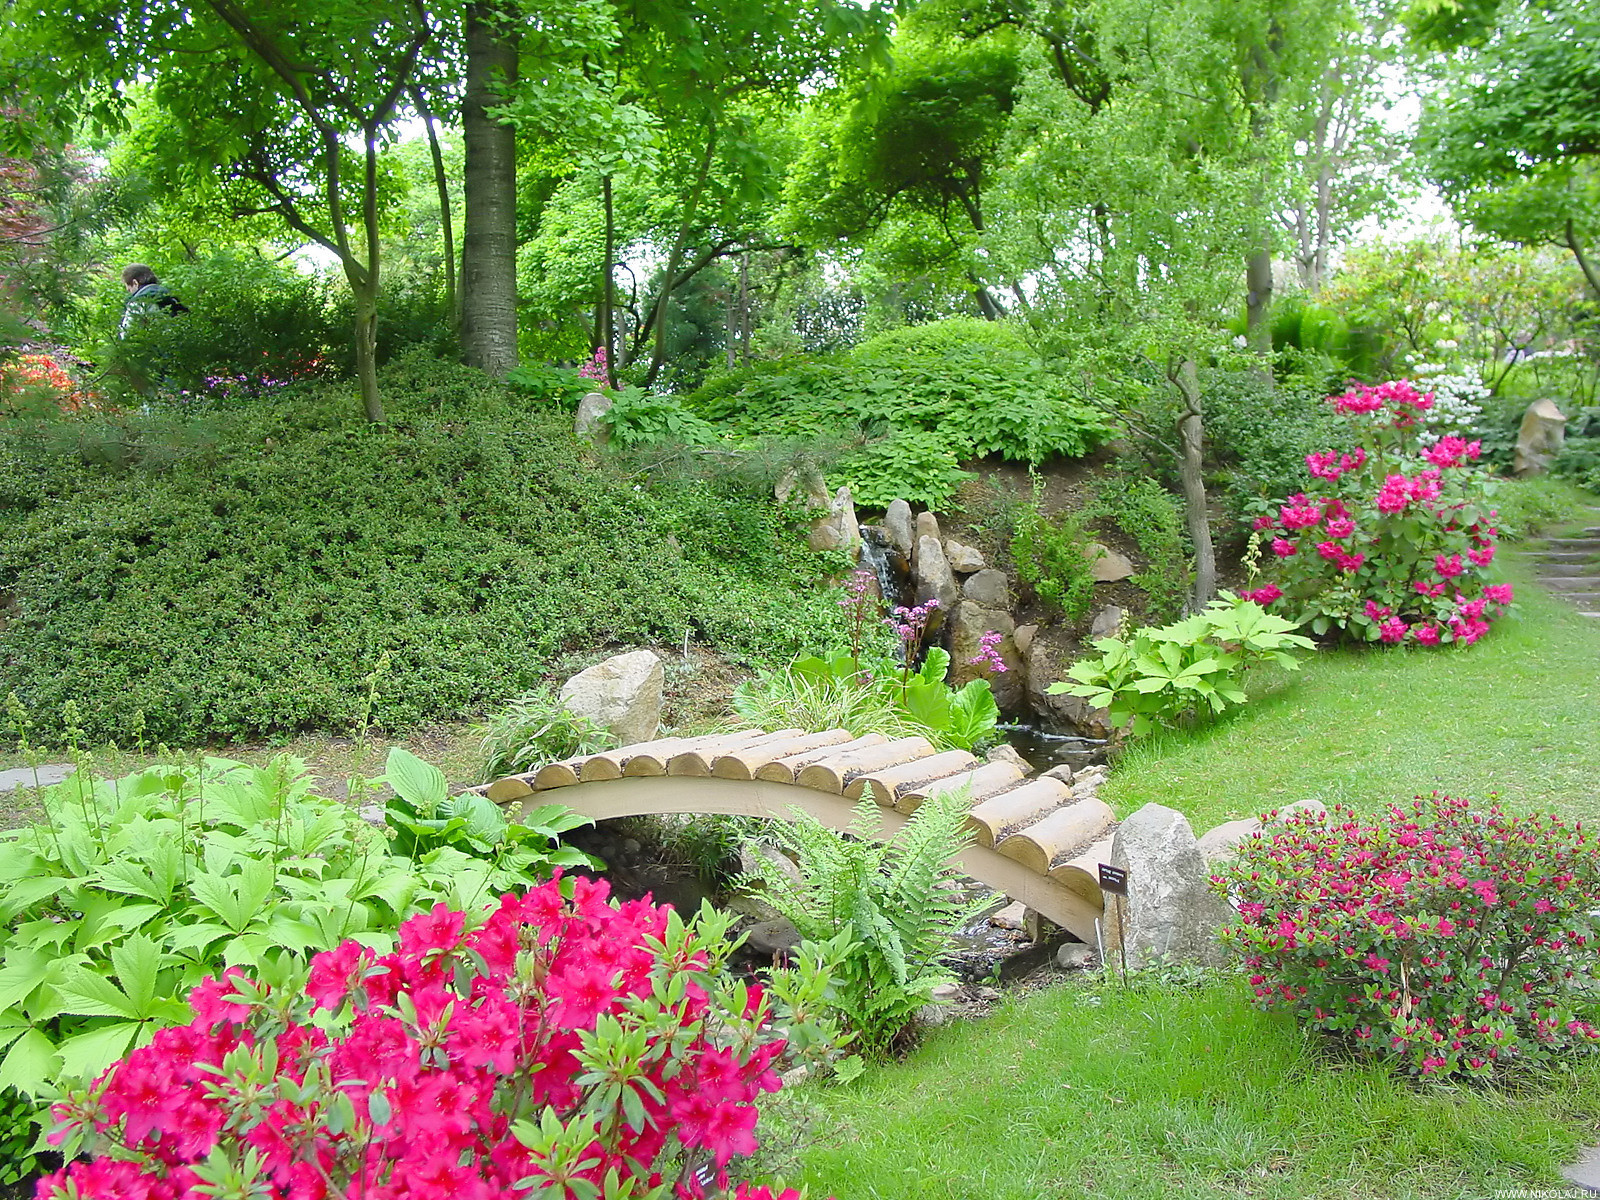 prekrasan krajolik vrta u engleskom stilu s cvijećem